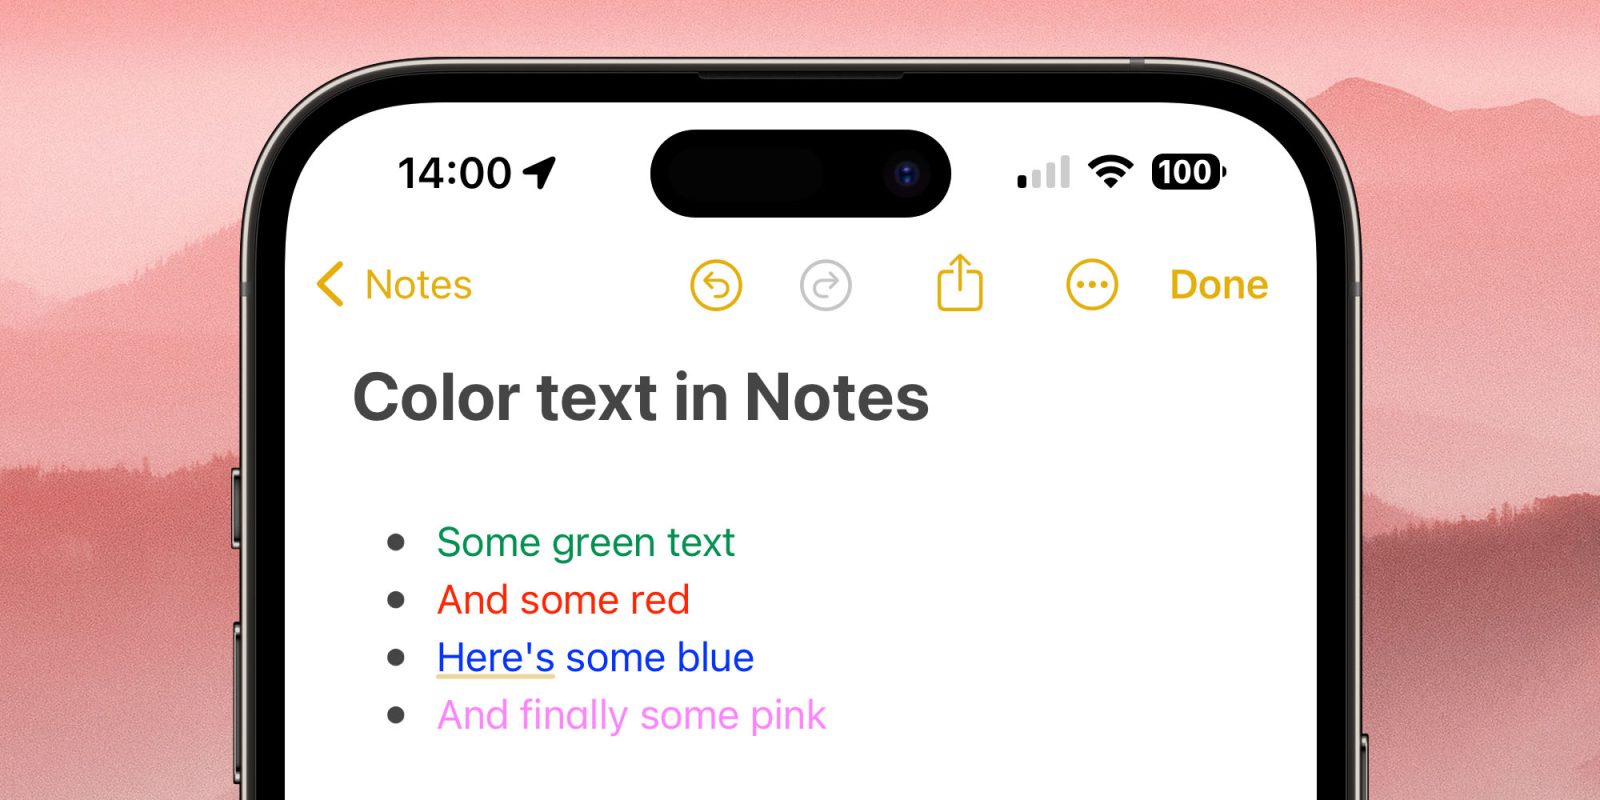 متن رنگی در Apple Notes (در اینجا در آیفون مشاهده می شود)